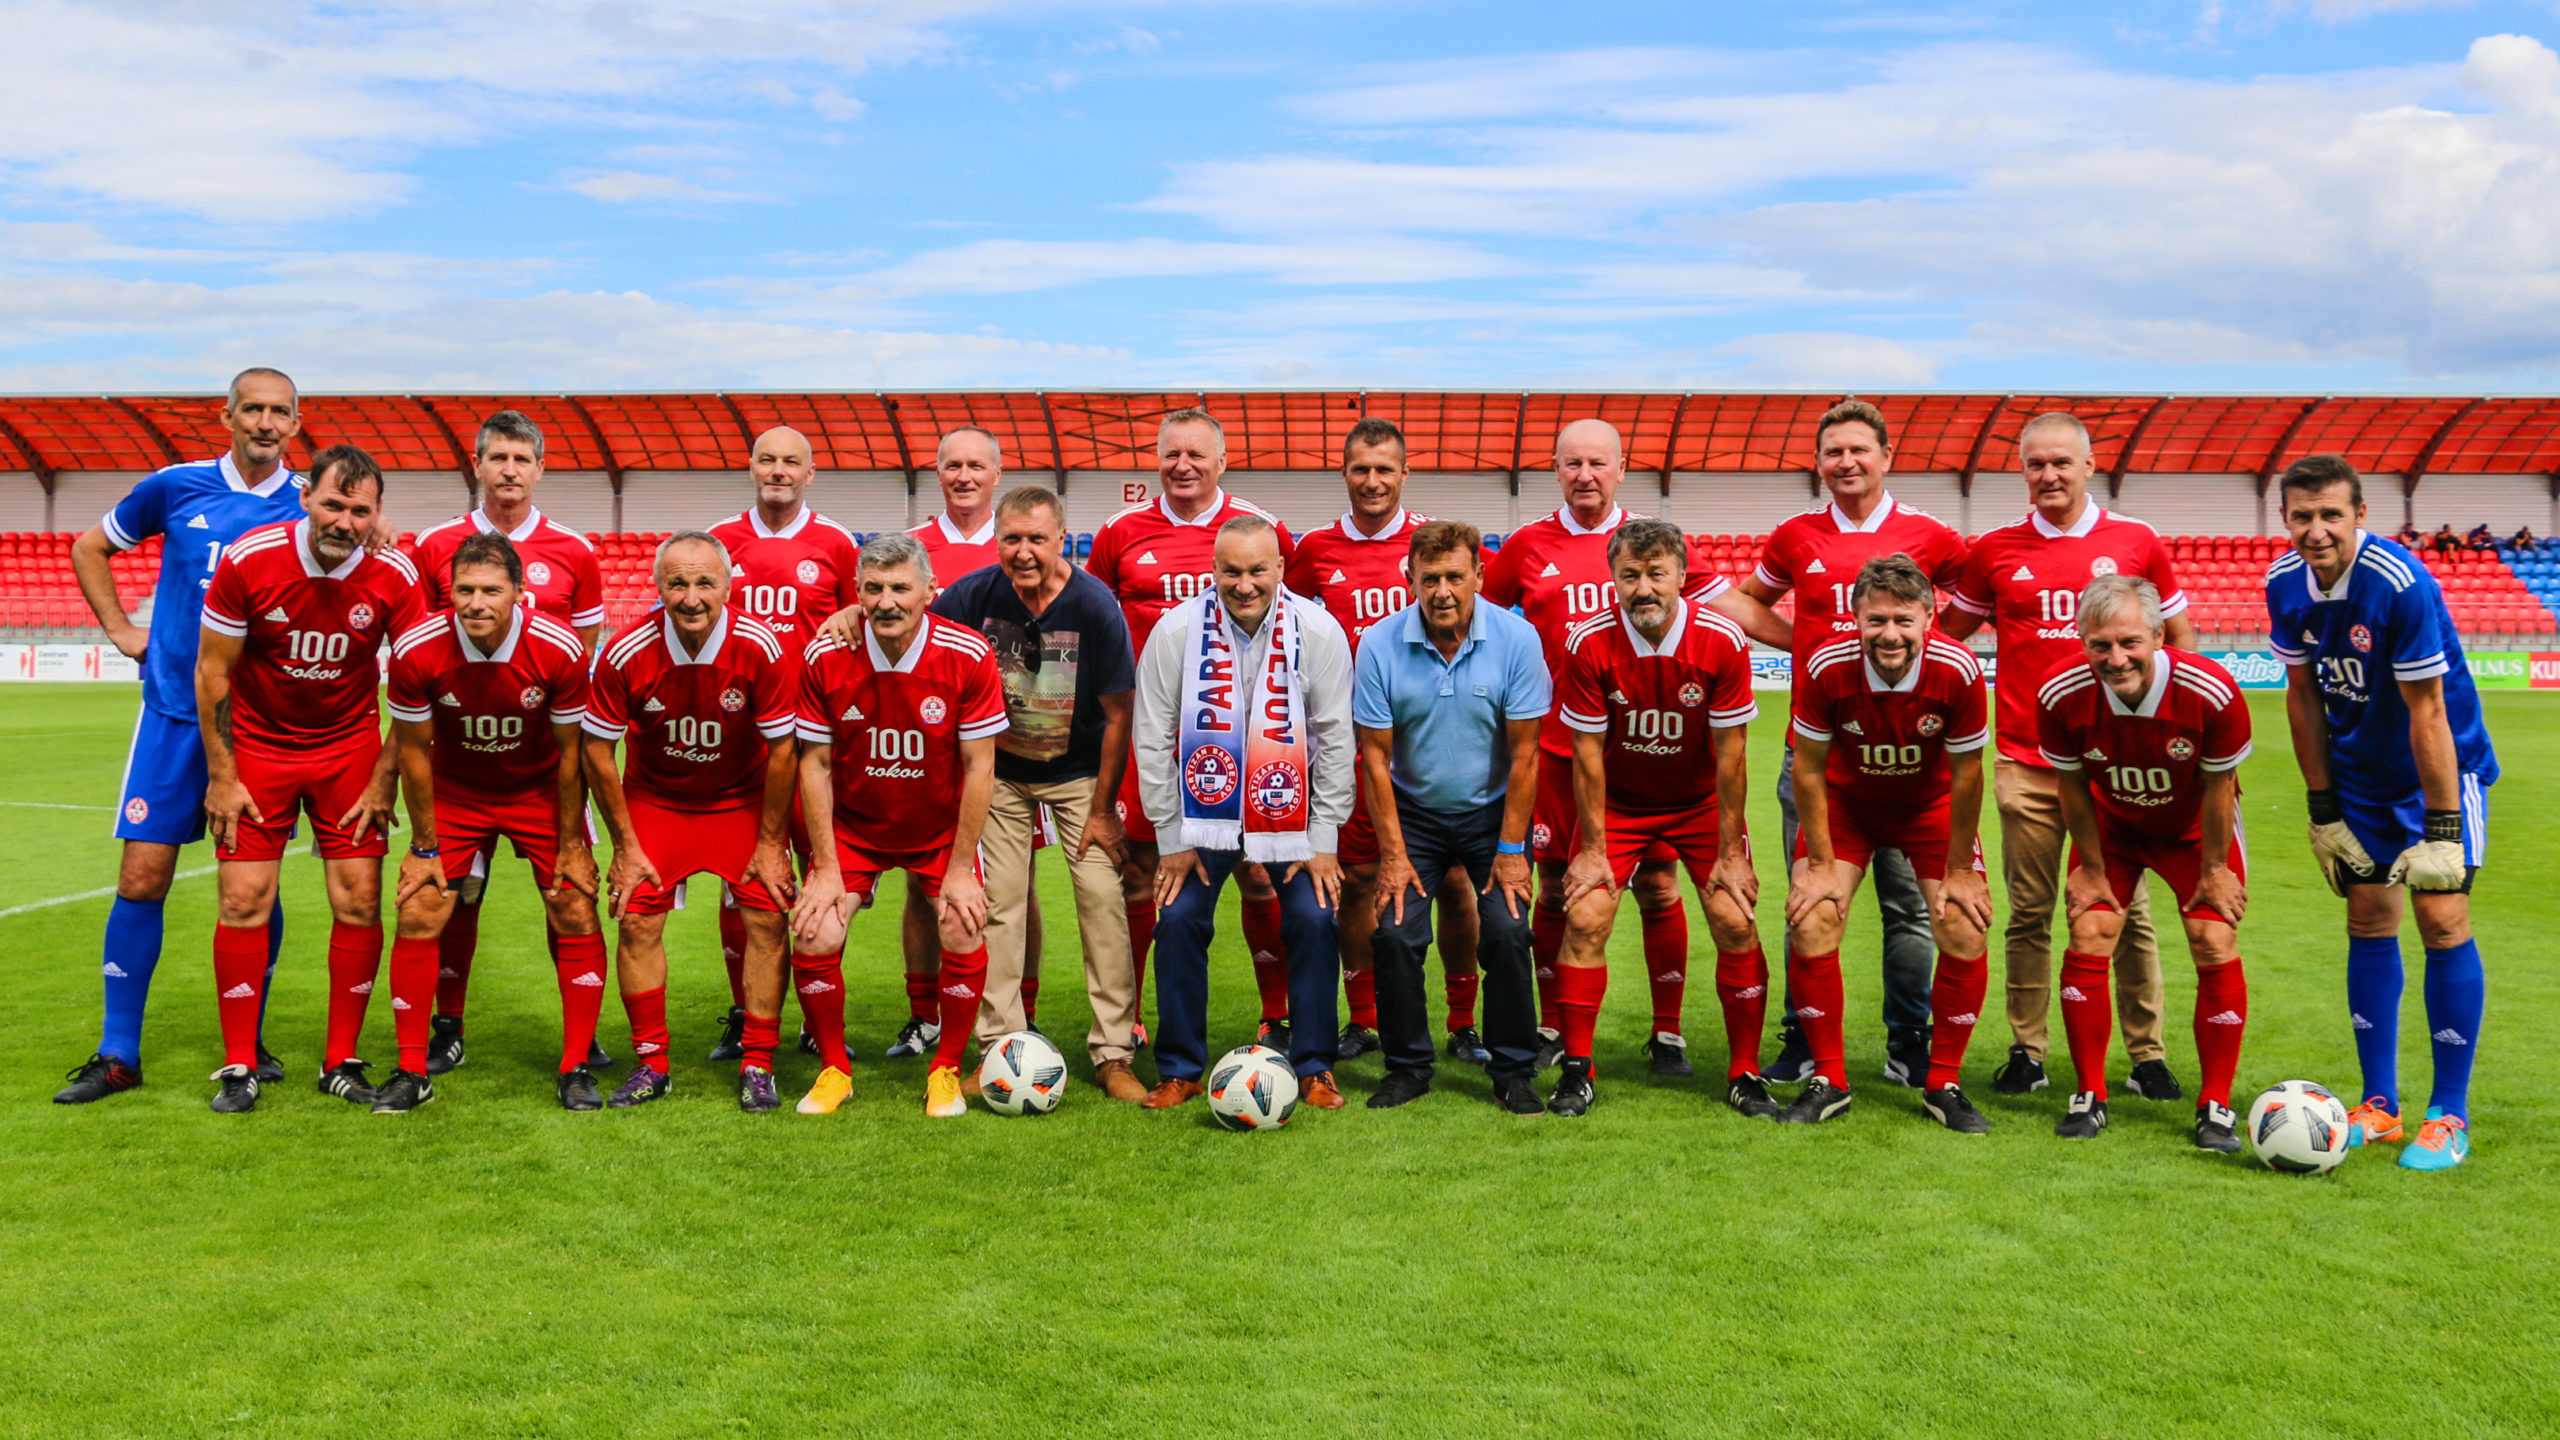 OBRAZOM: Oslavy storočnice bardejovského futbalu